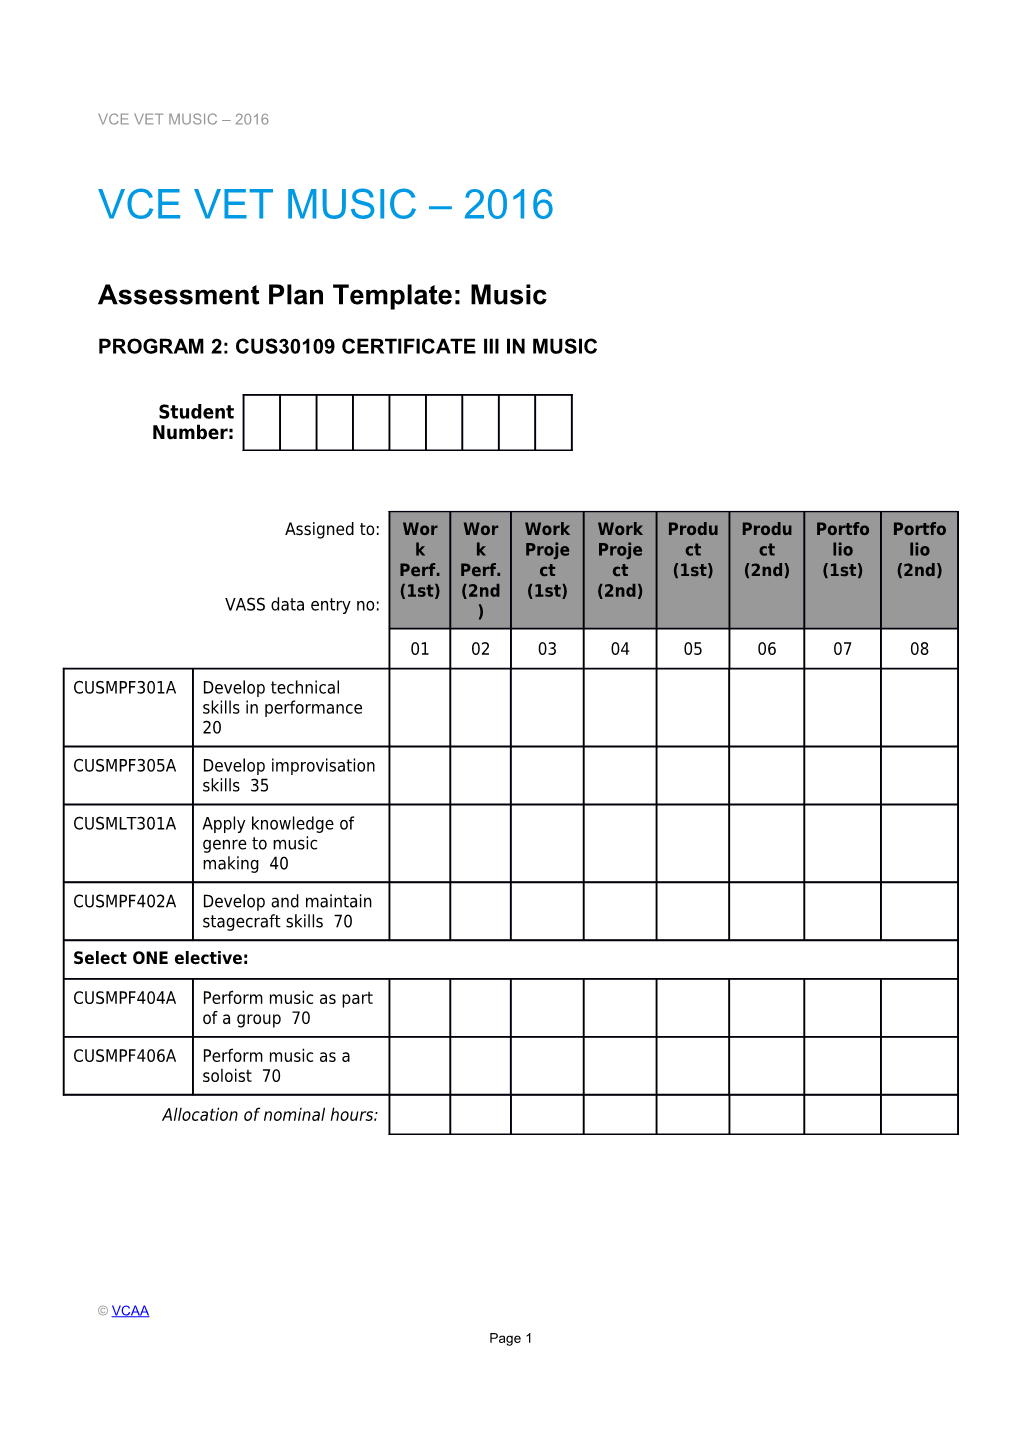 VCE VET Music - Assessment Plan - Template and Sample